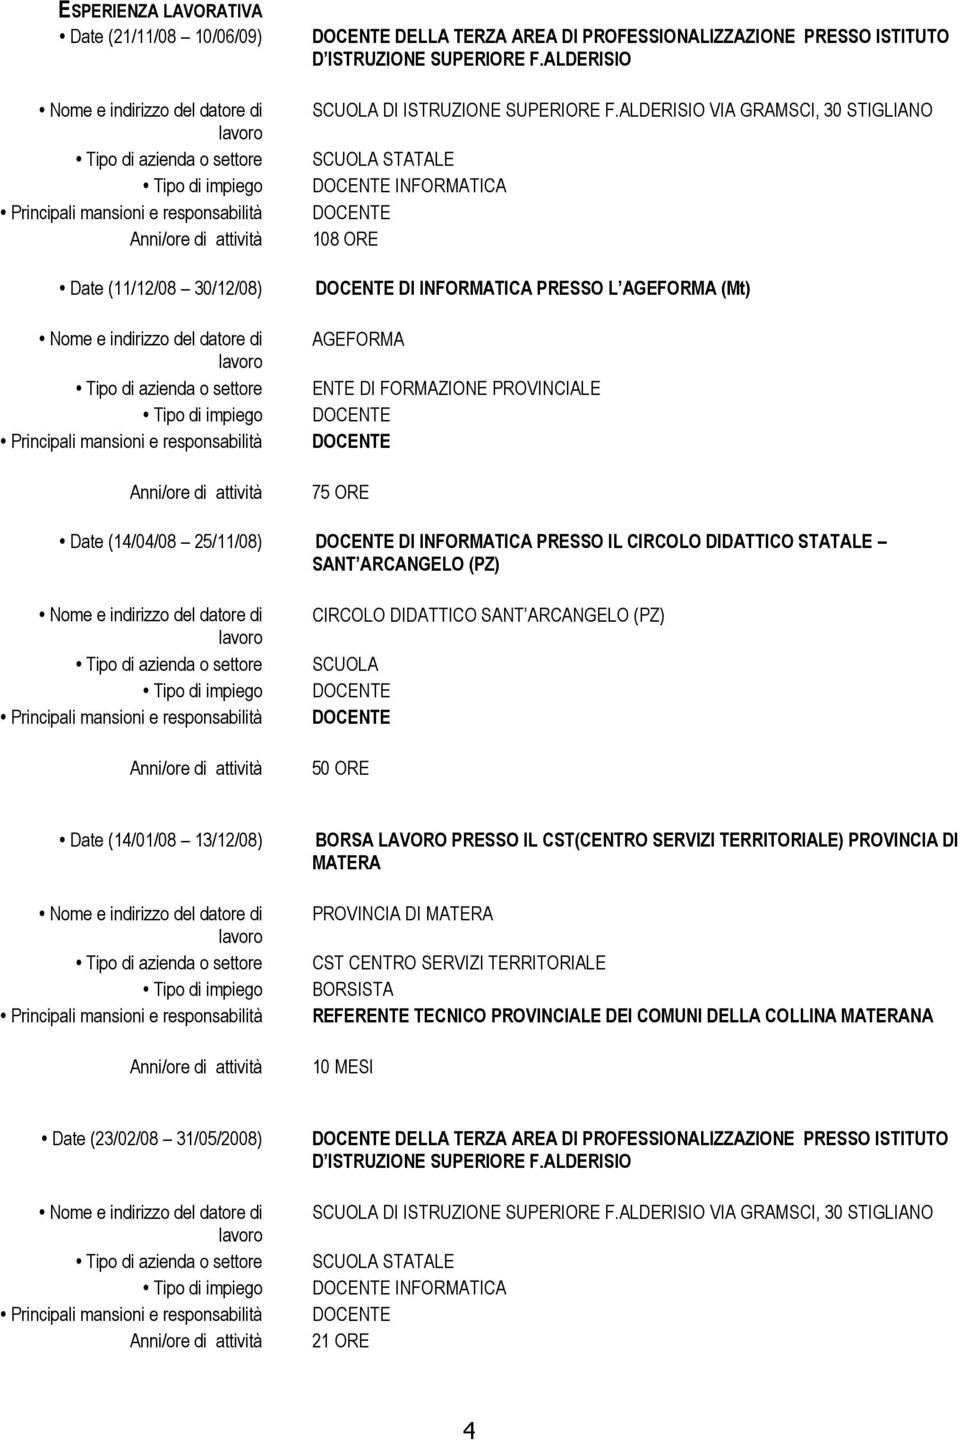 DIDATTICO STATALE SANT ARCANGELO (PZ) CIRCOLO DIDATTICO SANT ARCANGELO (PZ) SCUOLA 50 ORE Date (14/01/08 13/12/08) BORSA LAVORO PRESSO IL CST(CENTRO SERVIZI TERRITORIALE) PROVINCIA DI MATERA